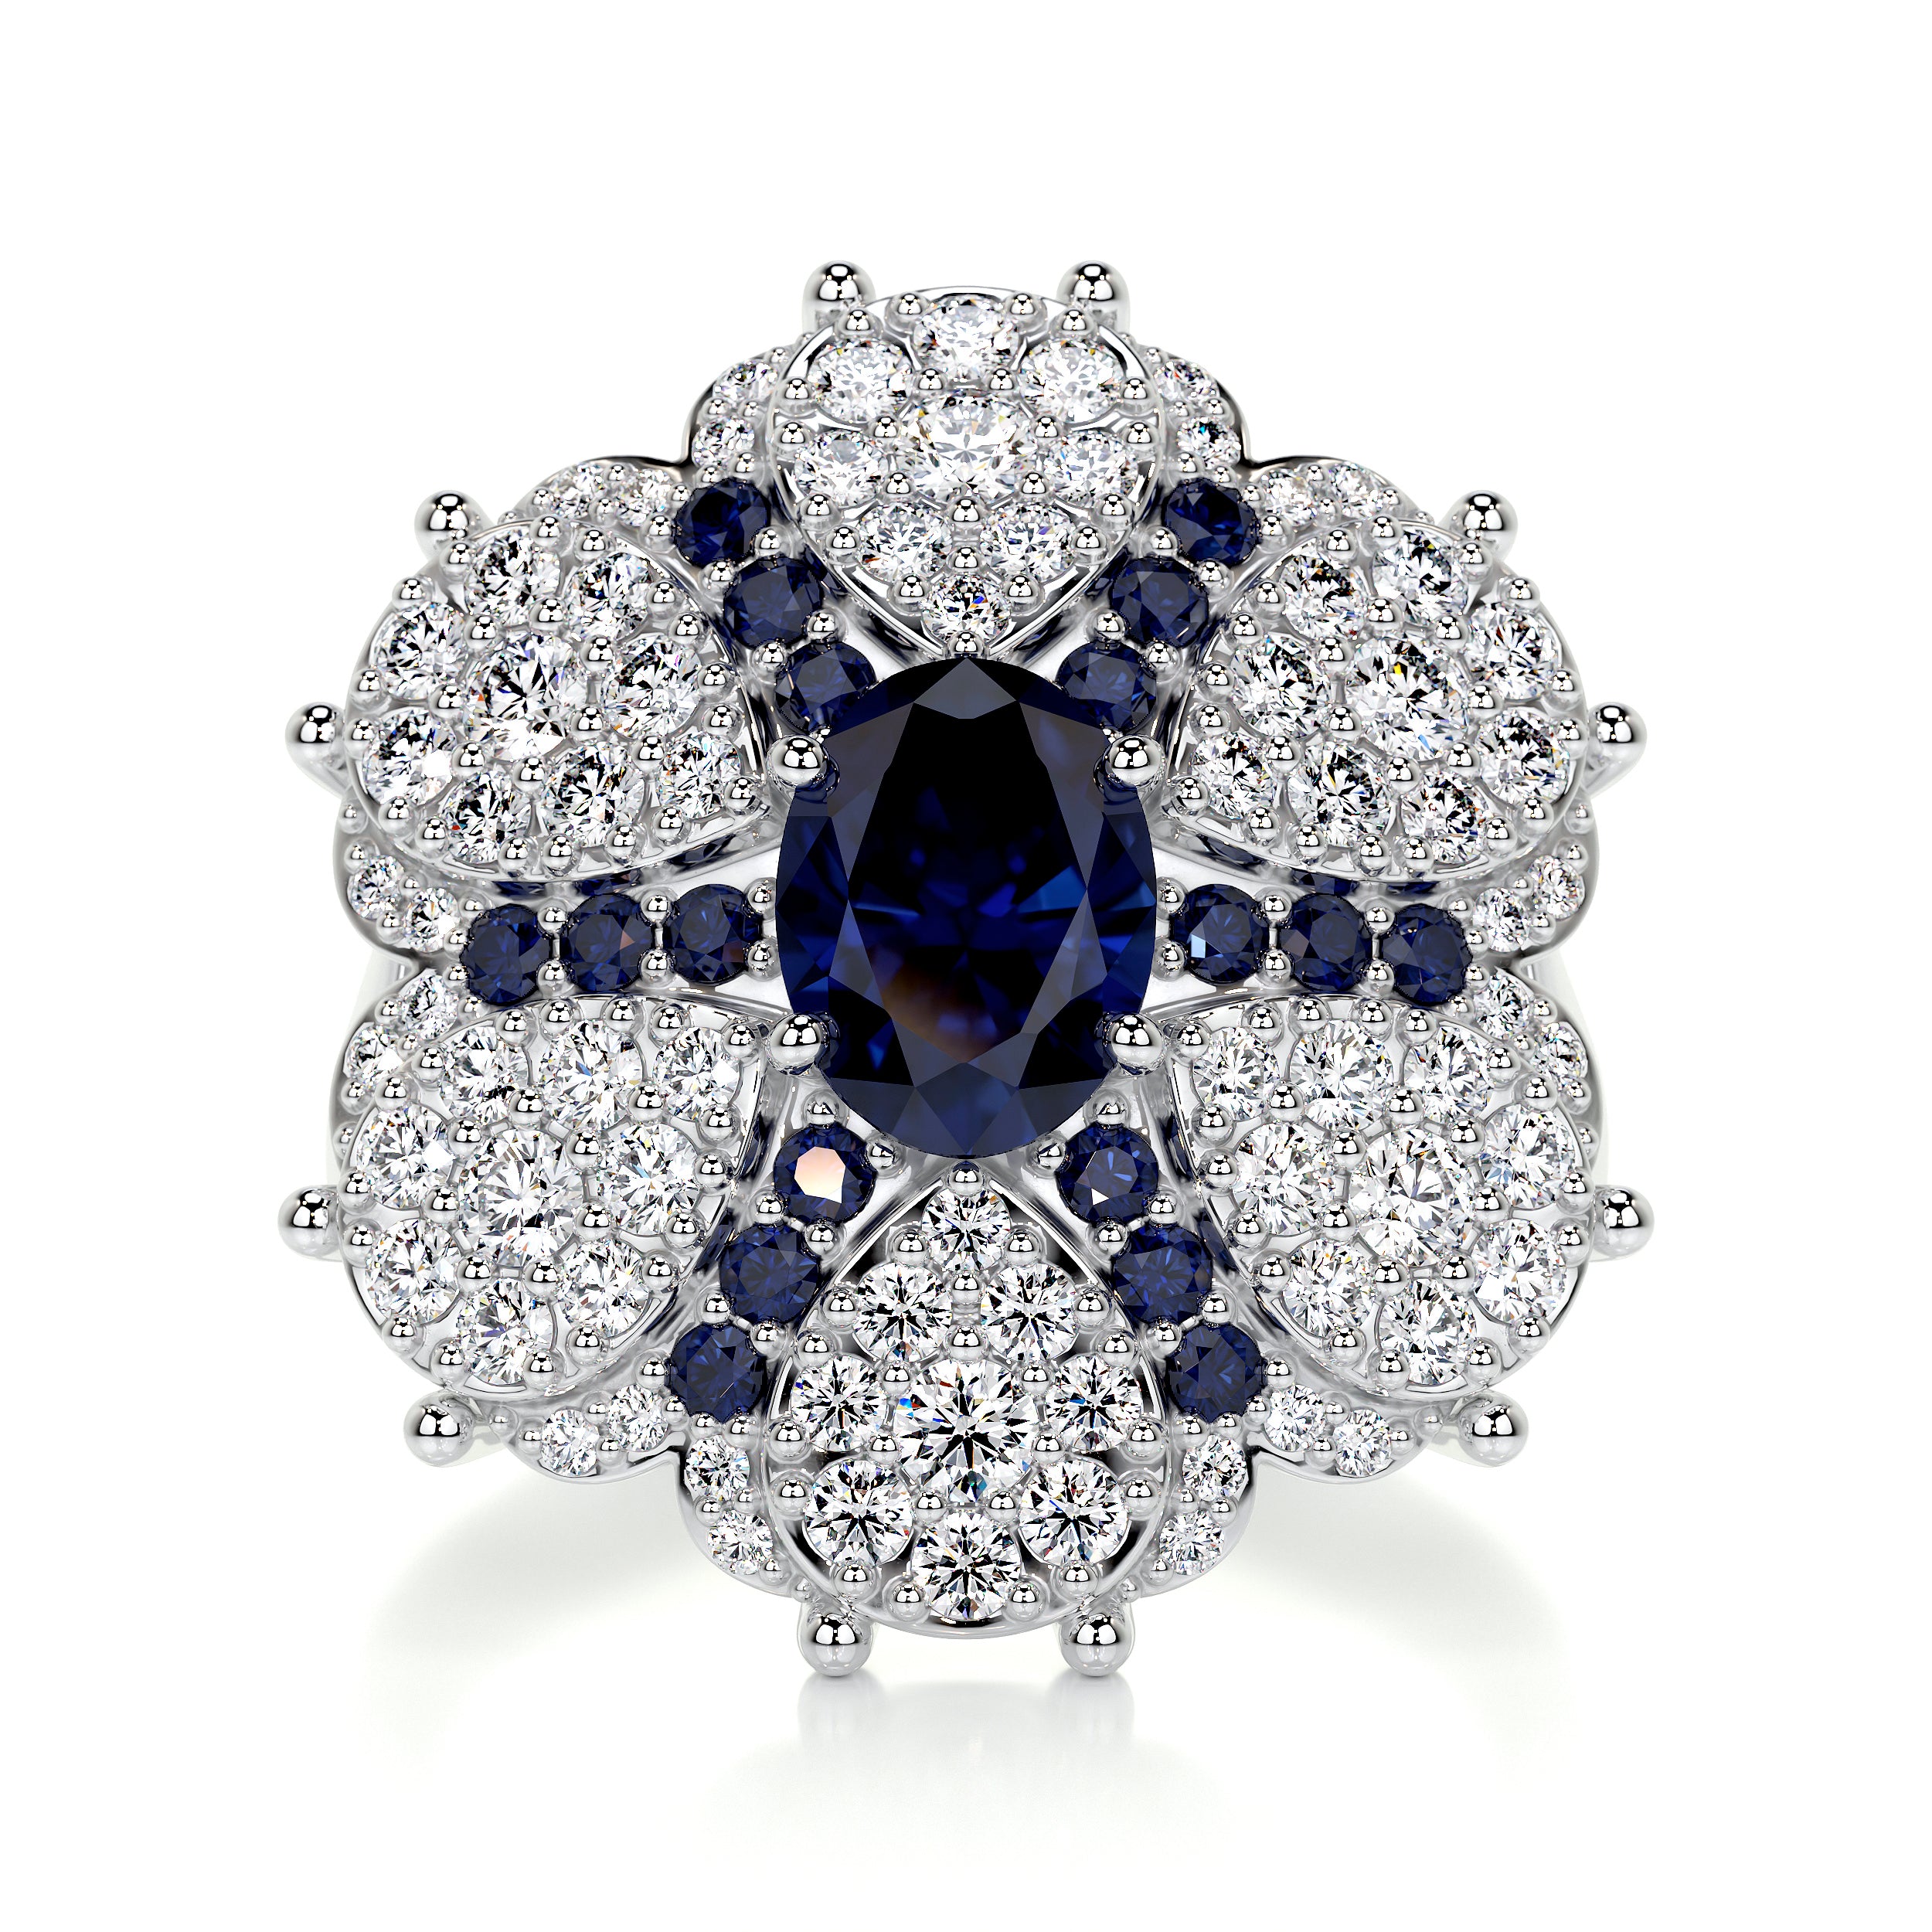 Amora Fashion Gemstones & Diamonds Ring   (2.91 Carat) -18K White Gold